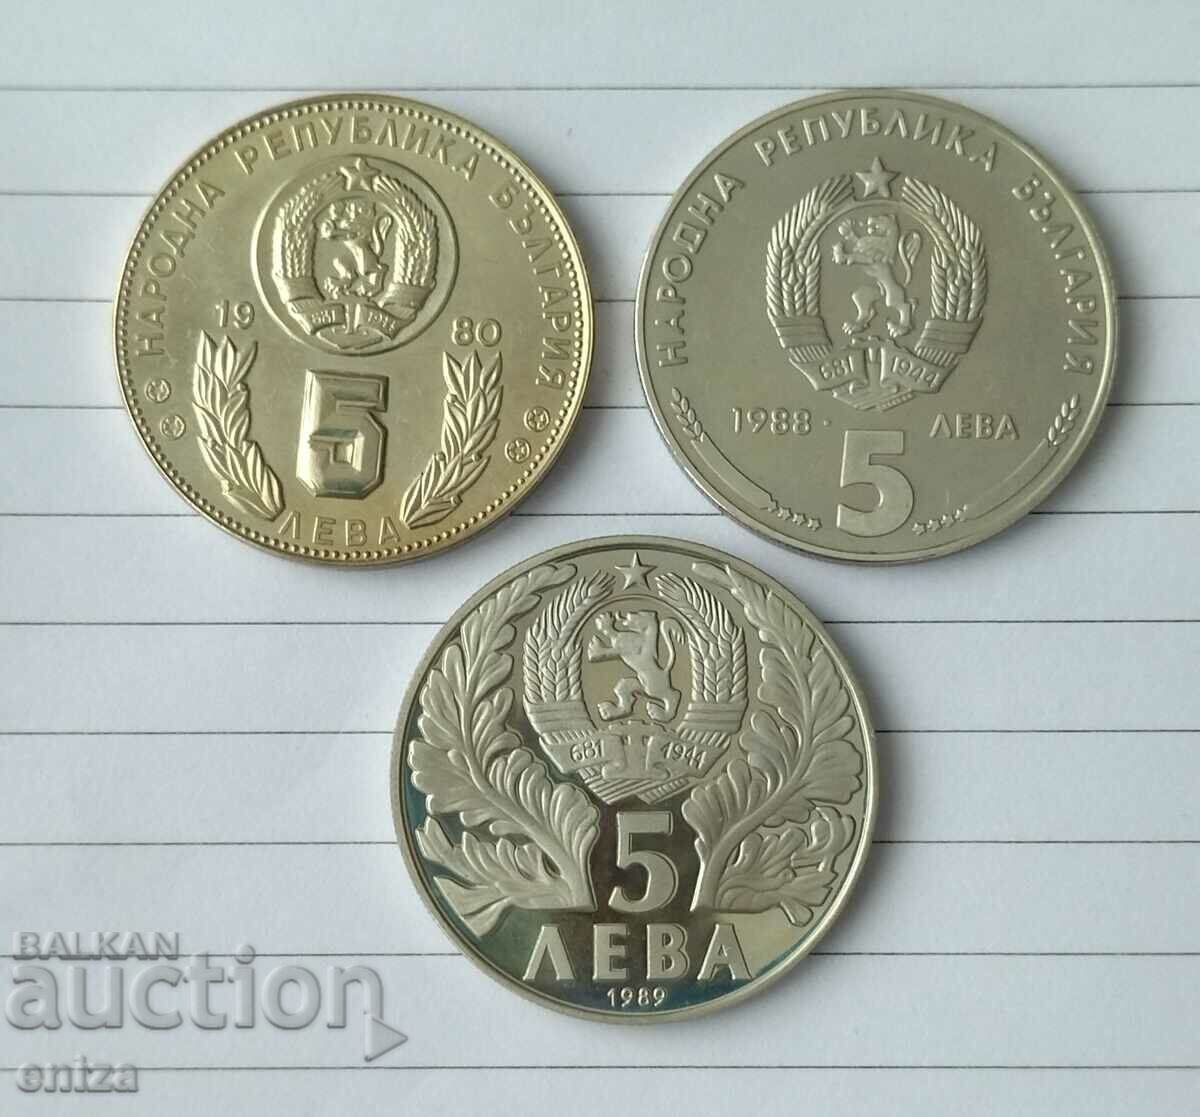 3 κοινωνικά ιωβηλαϊκά νομίσματα των 5 λέβα το καθένα